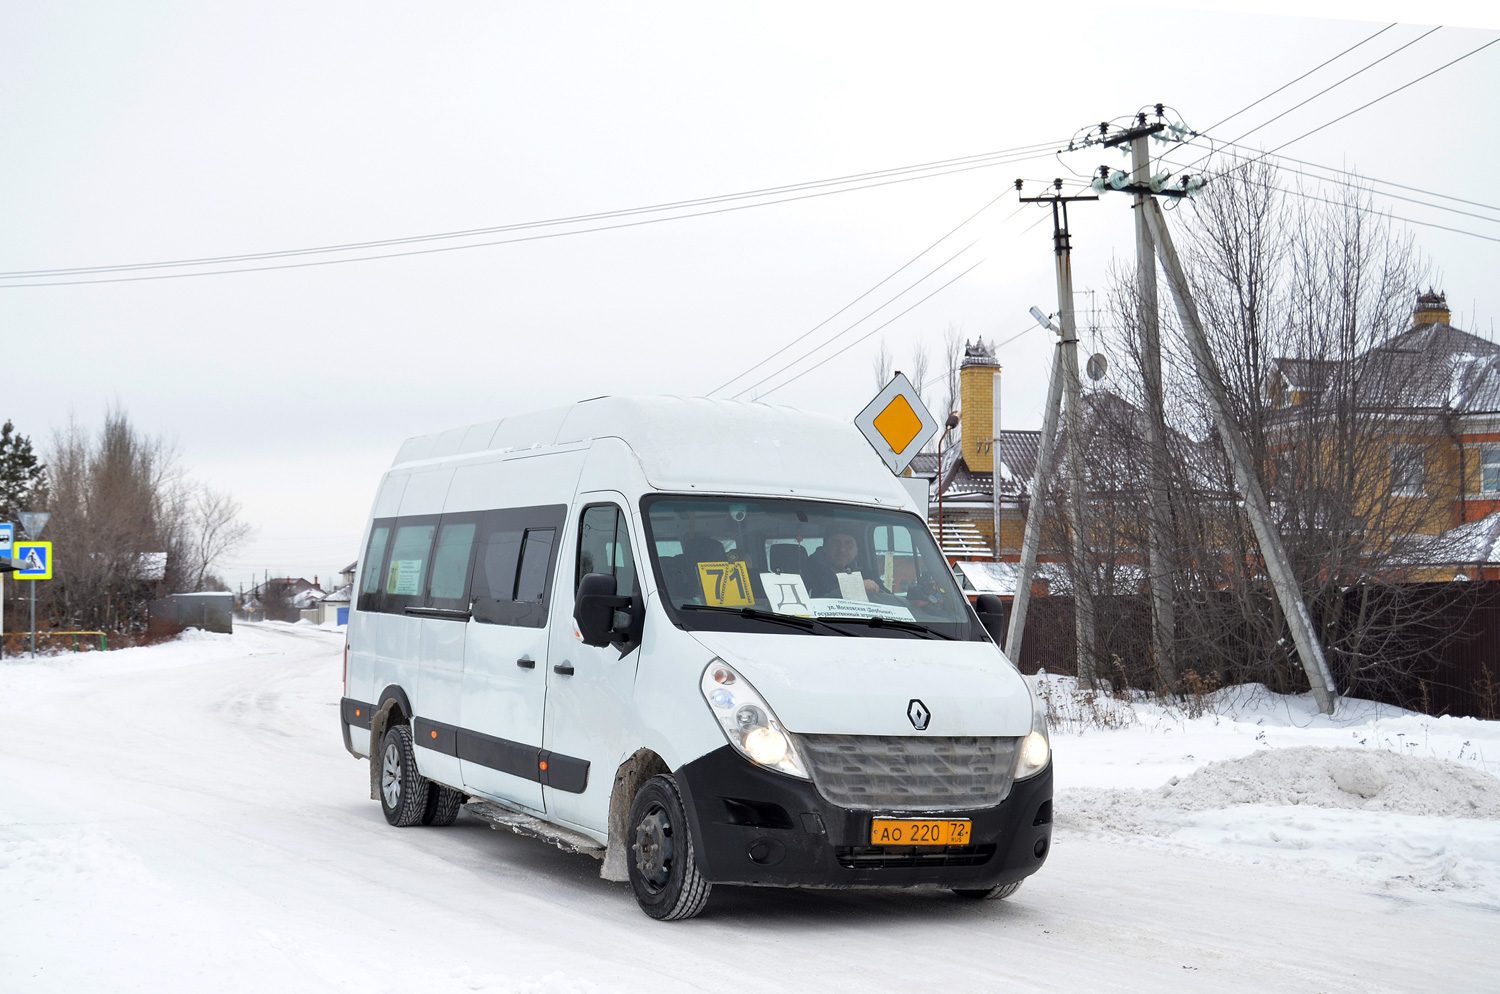 Тюменская область, Renault Master (NIAF08, НиАЗ) № АО 220 72